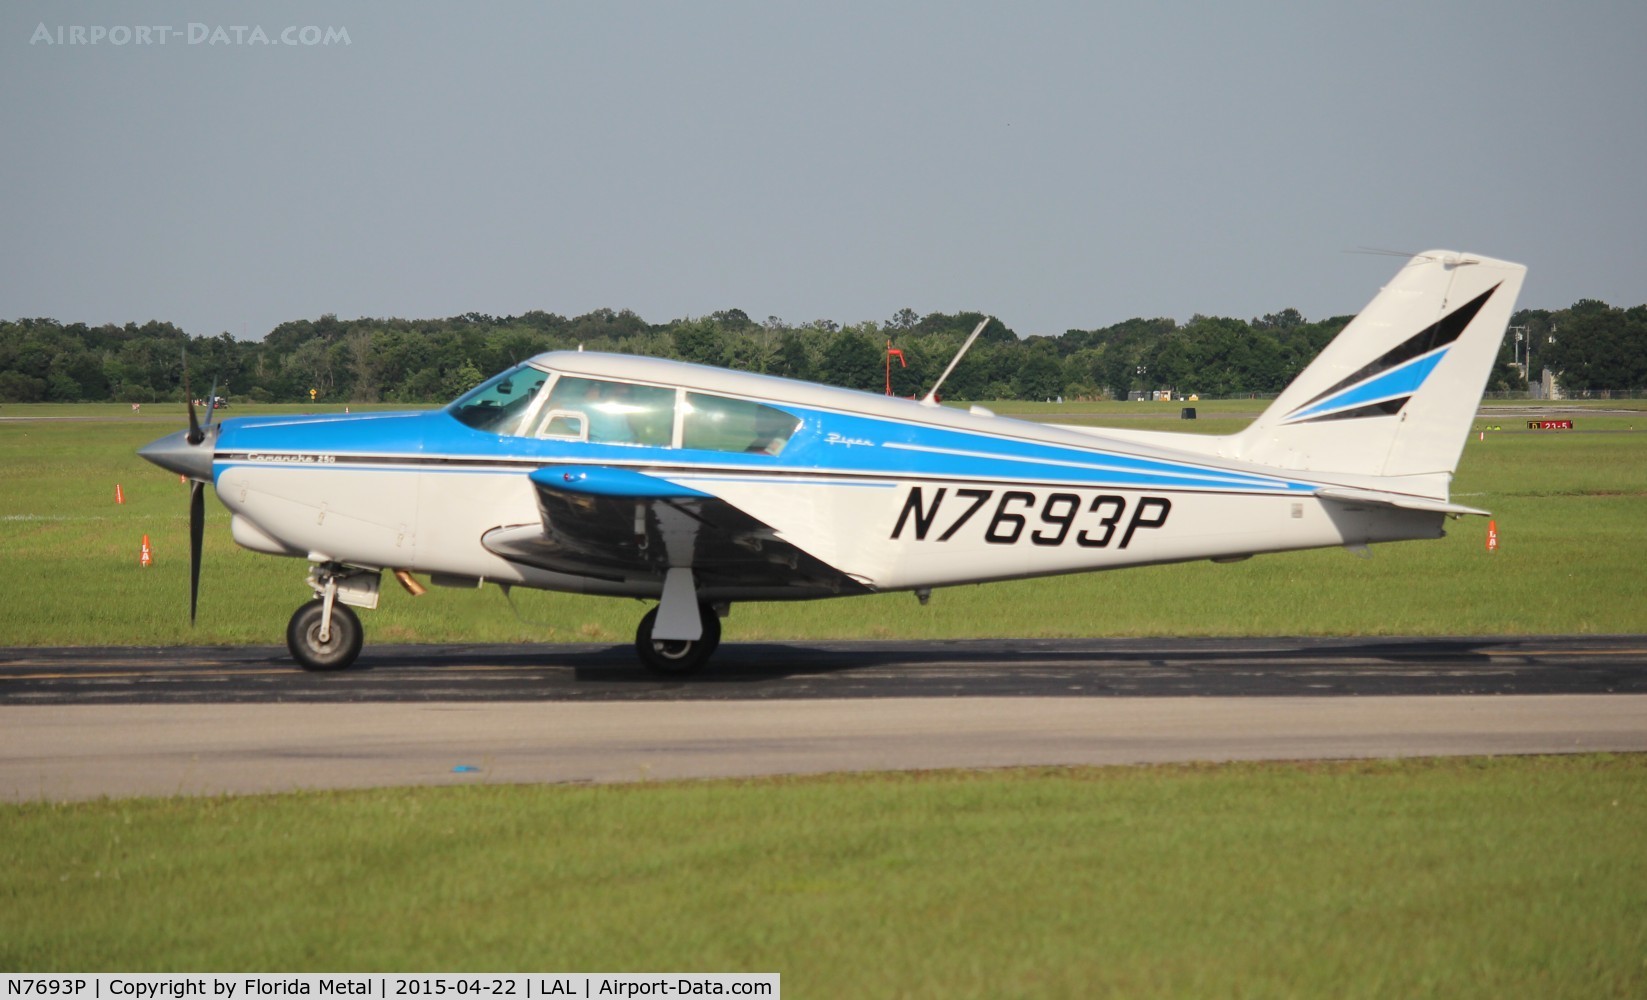 N7693P, 1961 Piper PA-24-250 Comanche C/N 24-2903, PA-24-250